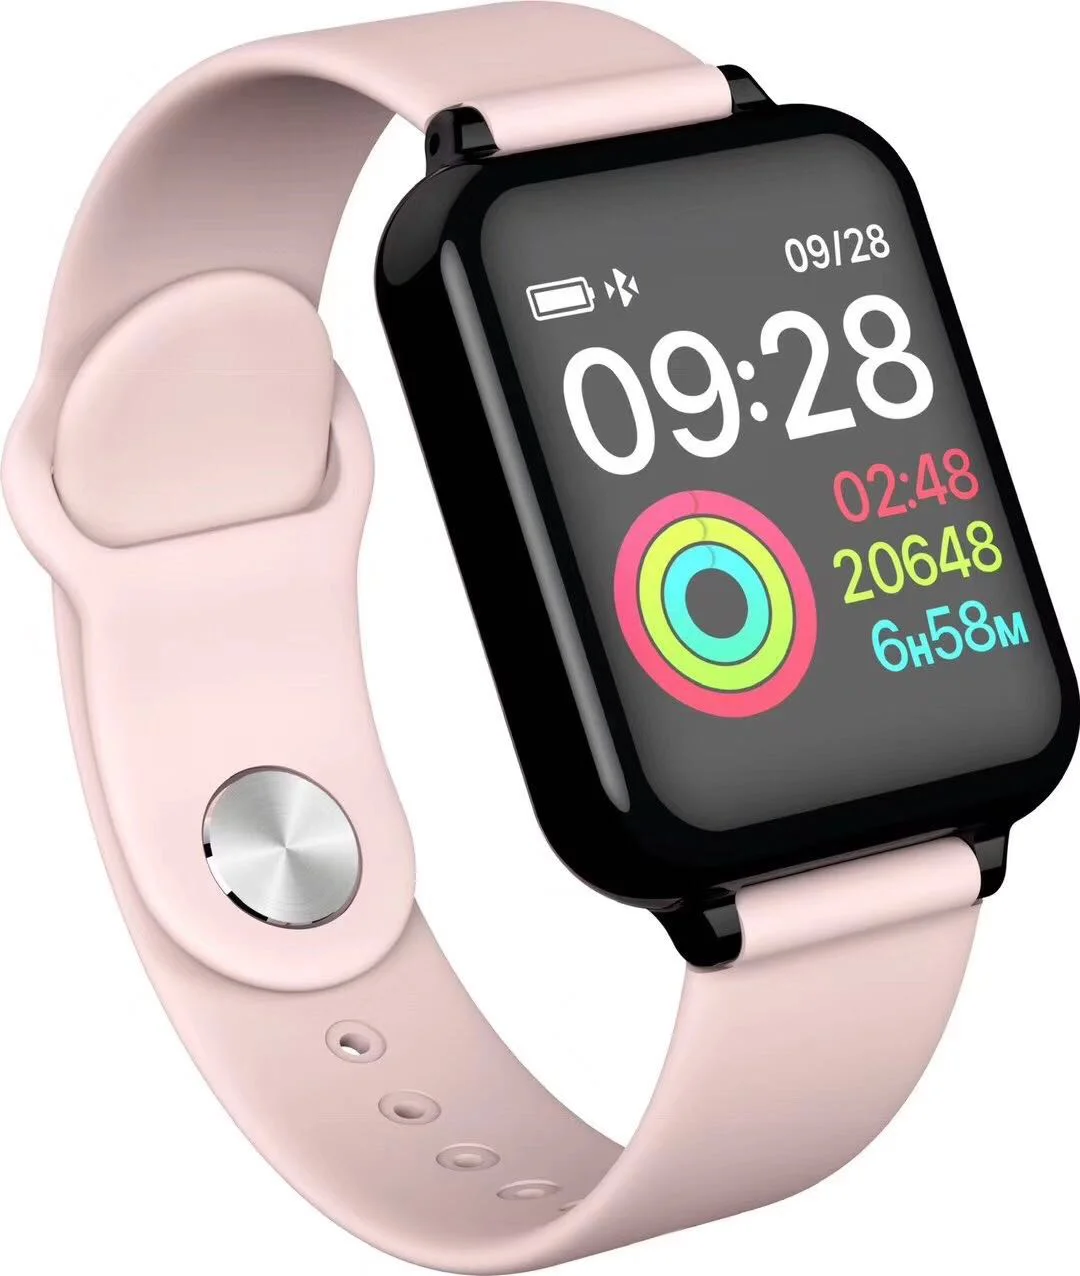 New Arrival Waterproof Smart Bracelet Heart Rate Monitor Fitness Tracker Sports Watch B57 Smart Watch 2019